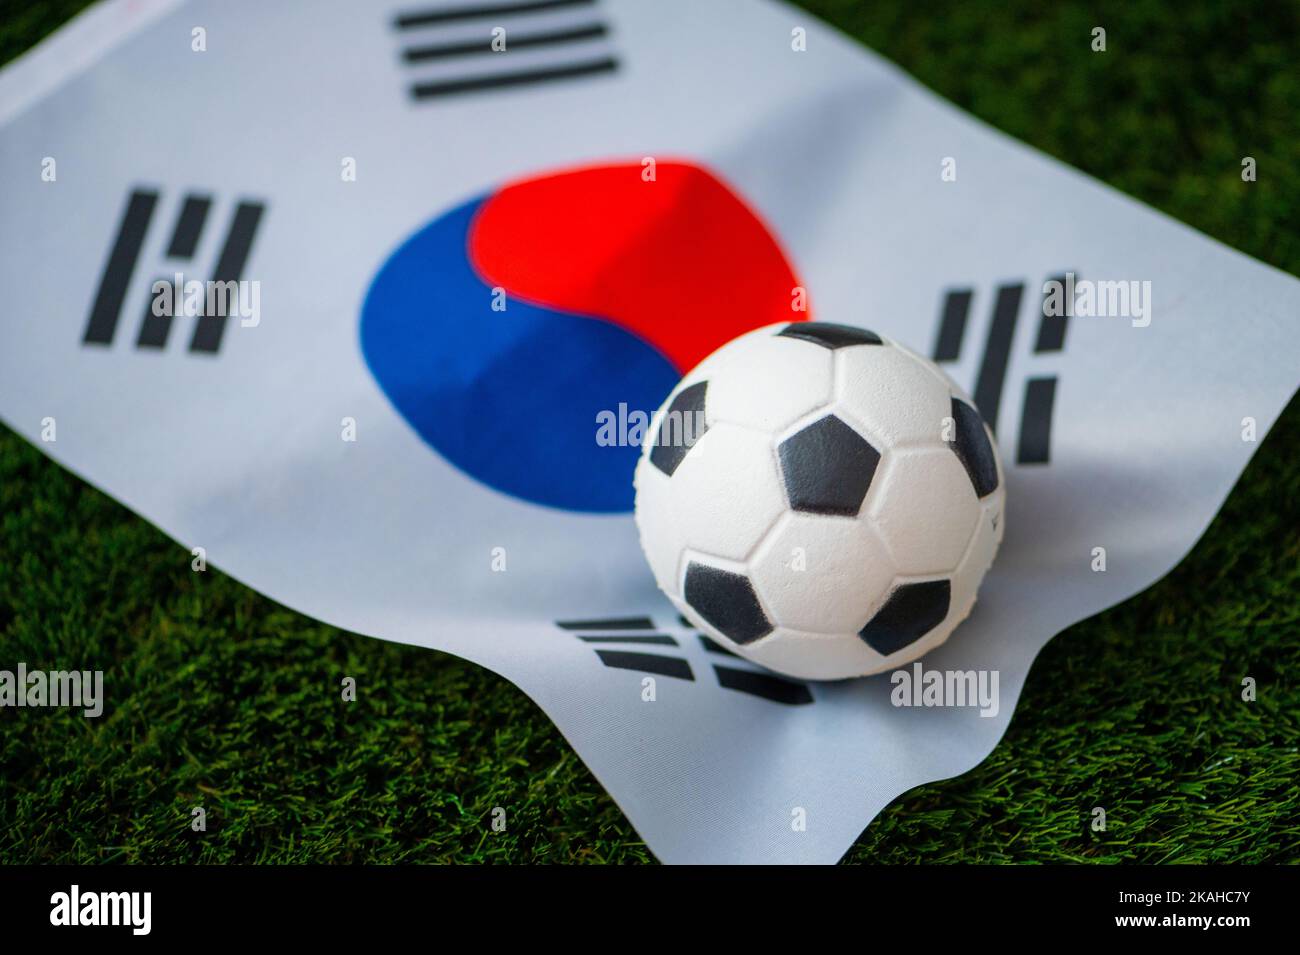 Équipe nationale de football de Corée du Sud. Drapeau national sur l'herbe verte et le ballon de football. Papier peint pour le championnat et le tournoi de football en 2022. Monde entier Banque D'Images